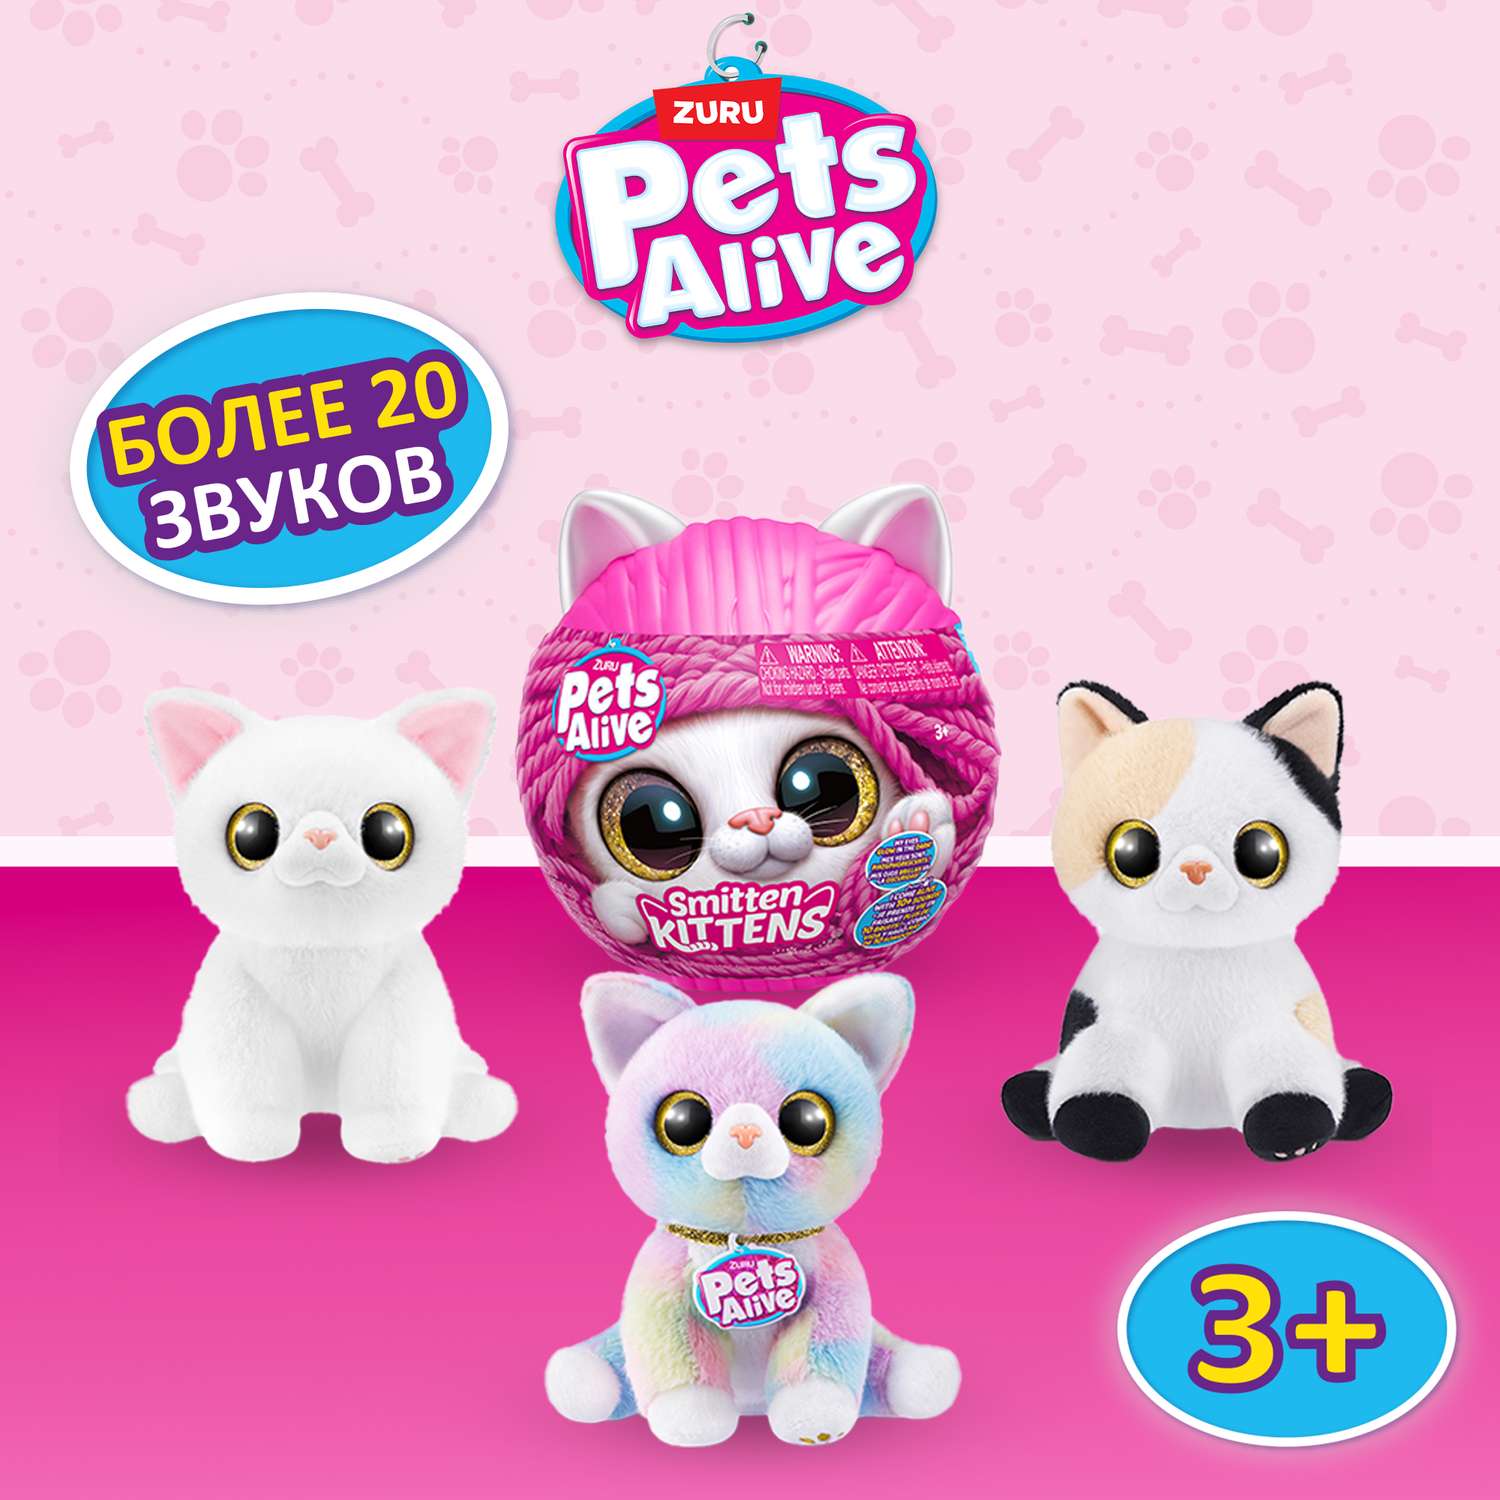 Игрушка Pets Alive Smitten Kittens Шар в непрозрачной упаковке (Сюрприз) 9541 - фото 1